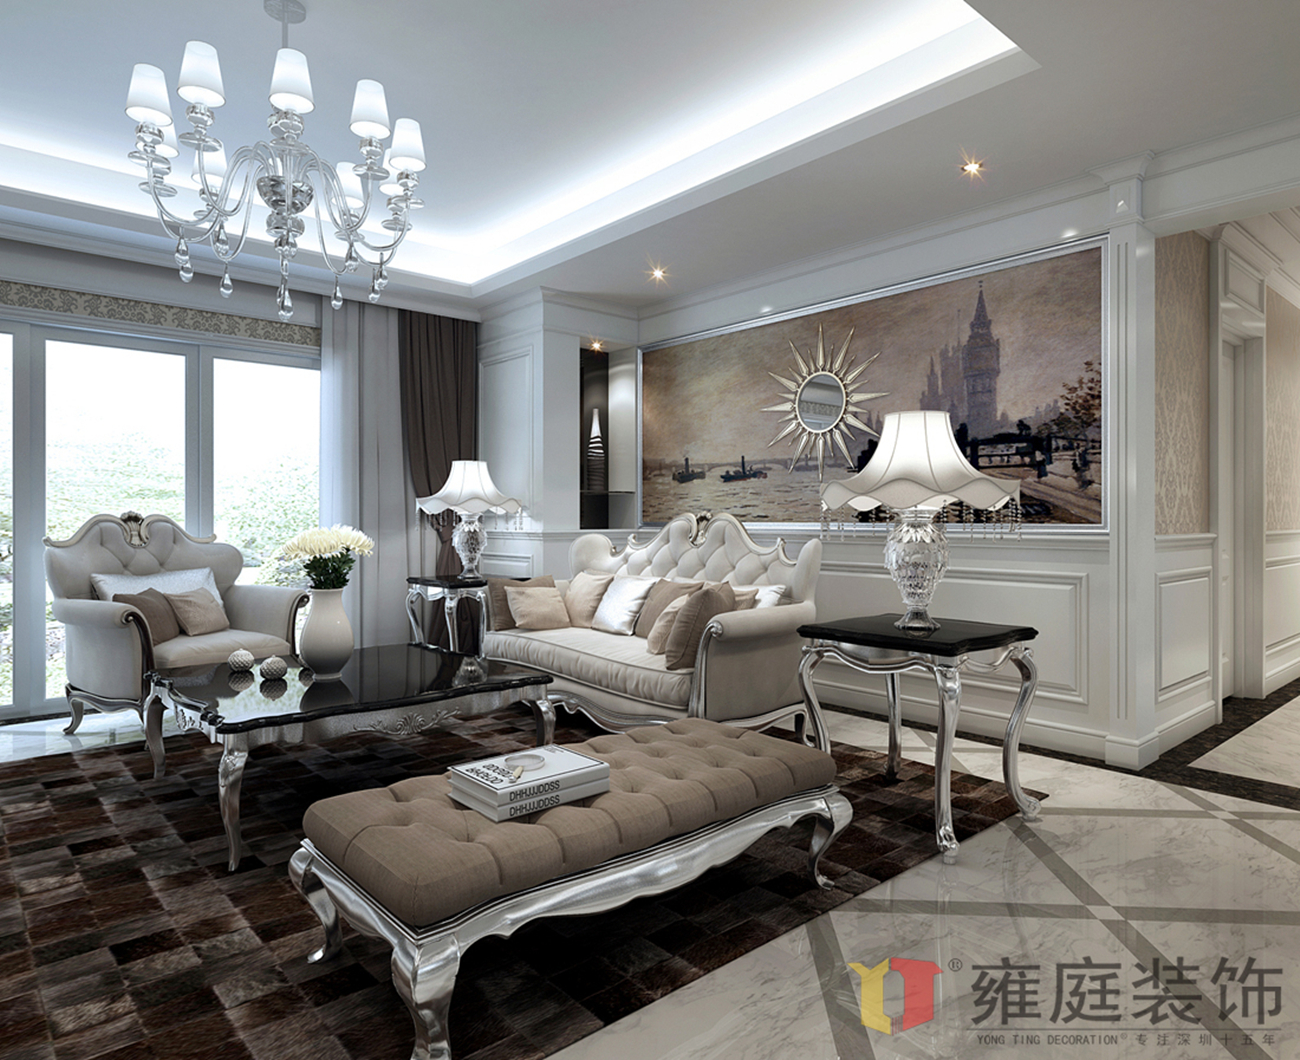 简约 欧式 小资 客厅图片来自深圳雍庭装饰在居家原创的分享